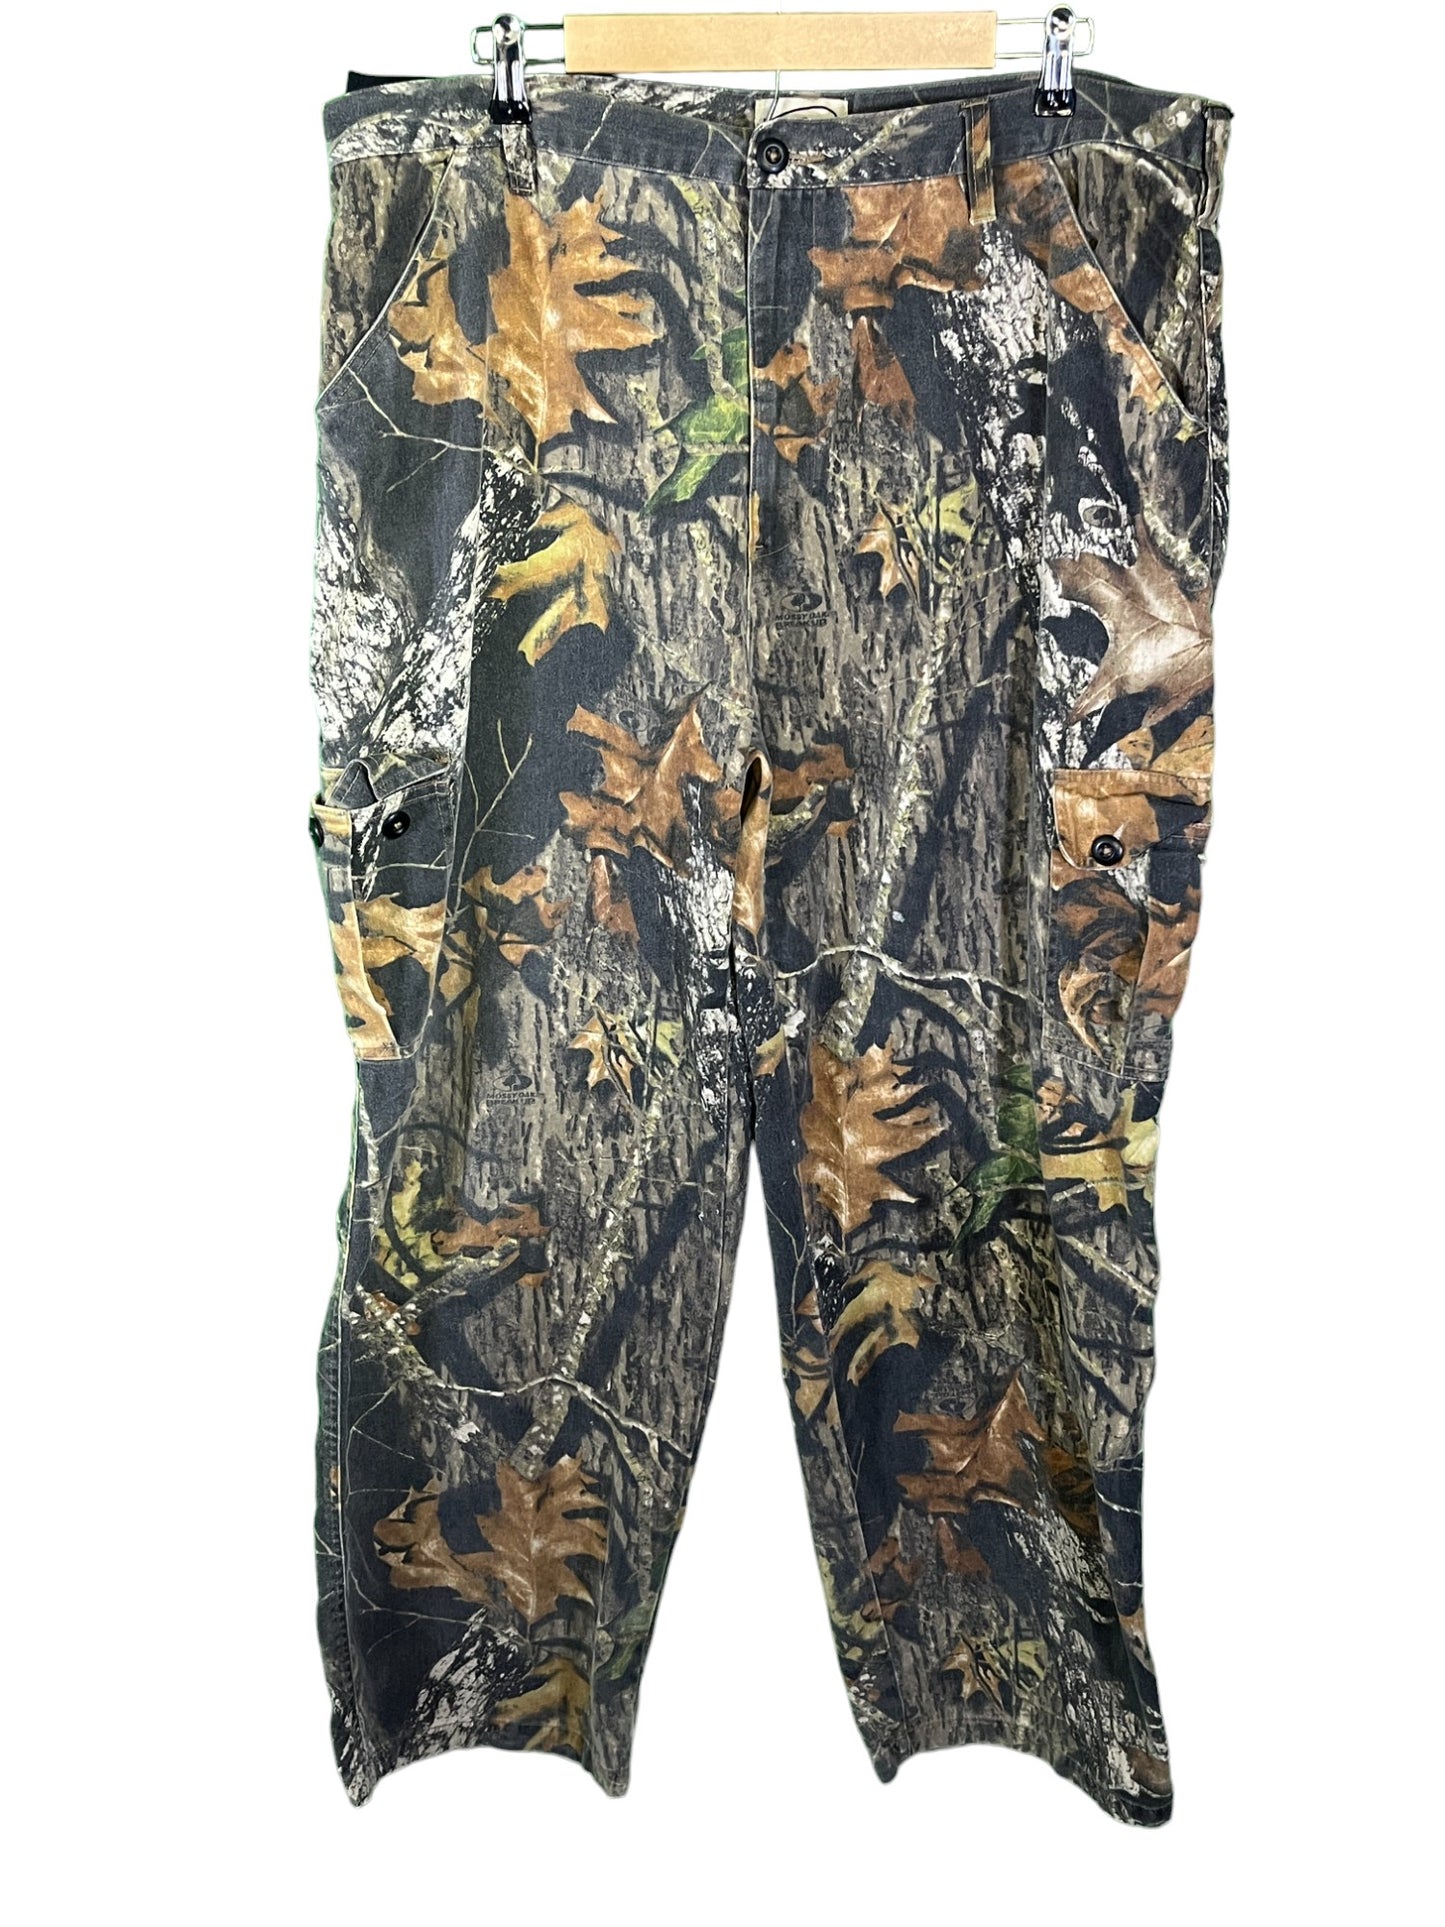 FieldStaff Hunters Woodland Camo Cargo Pants Size 38x32